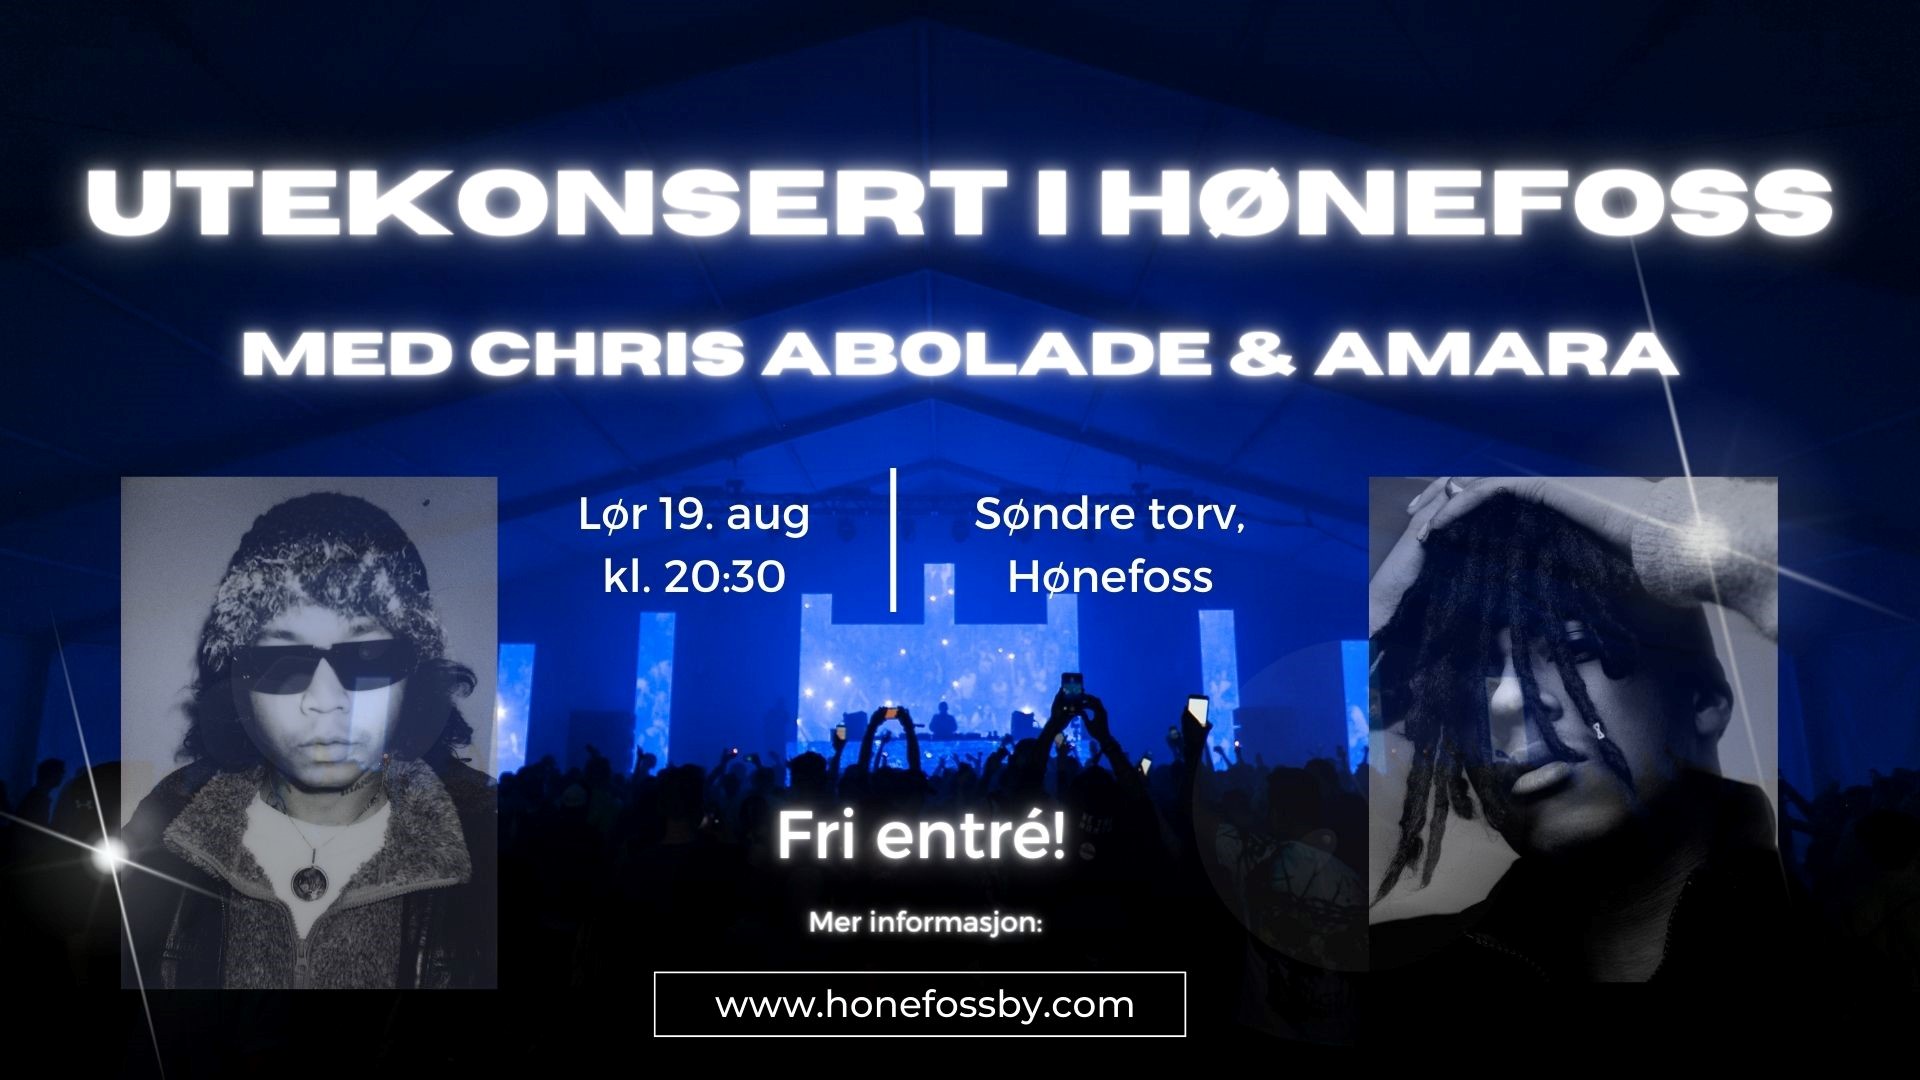 Gratis utekonsert med Chris Abolade and Amara - Konsert, Hønefoss bilde